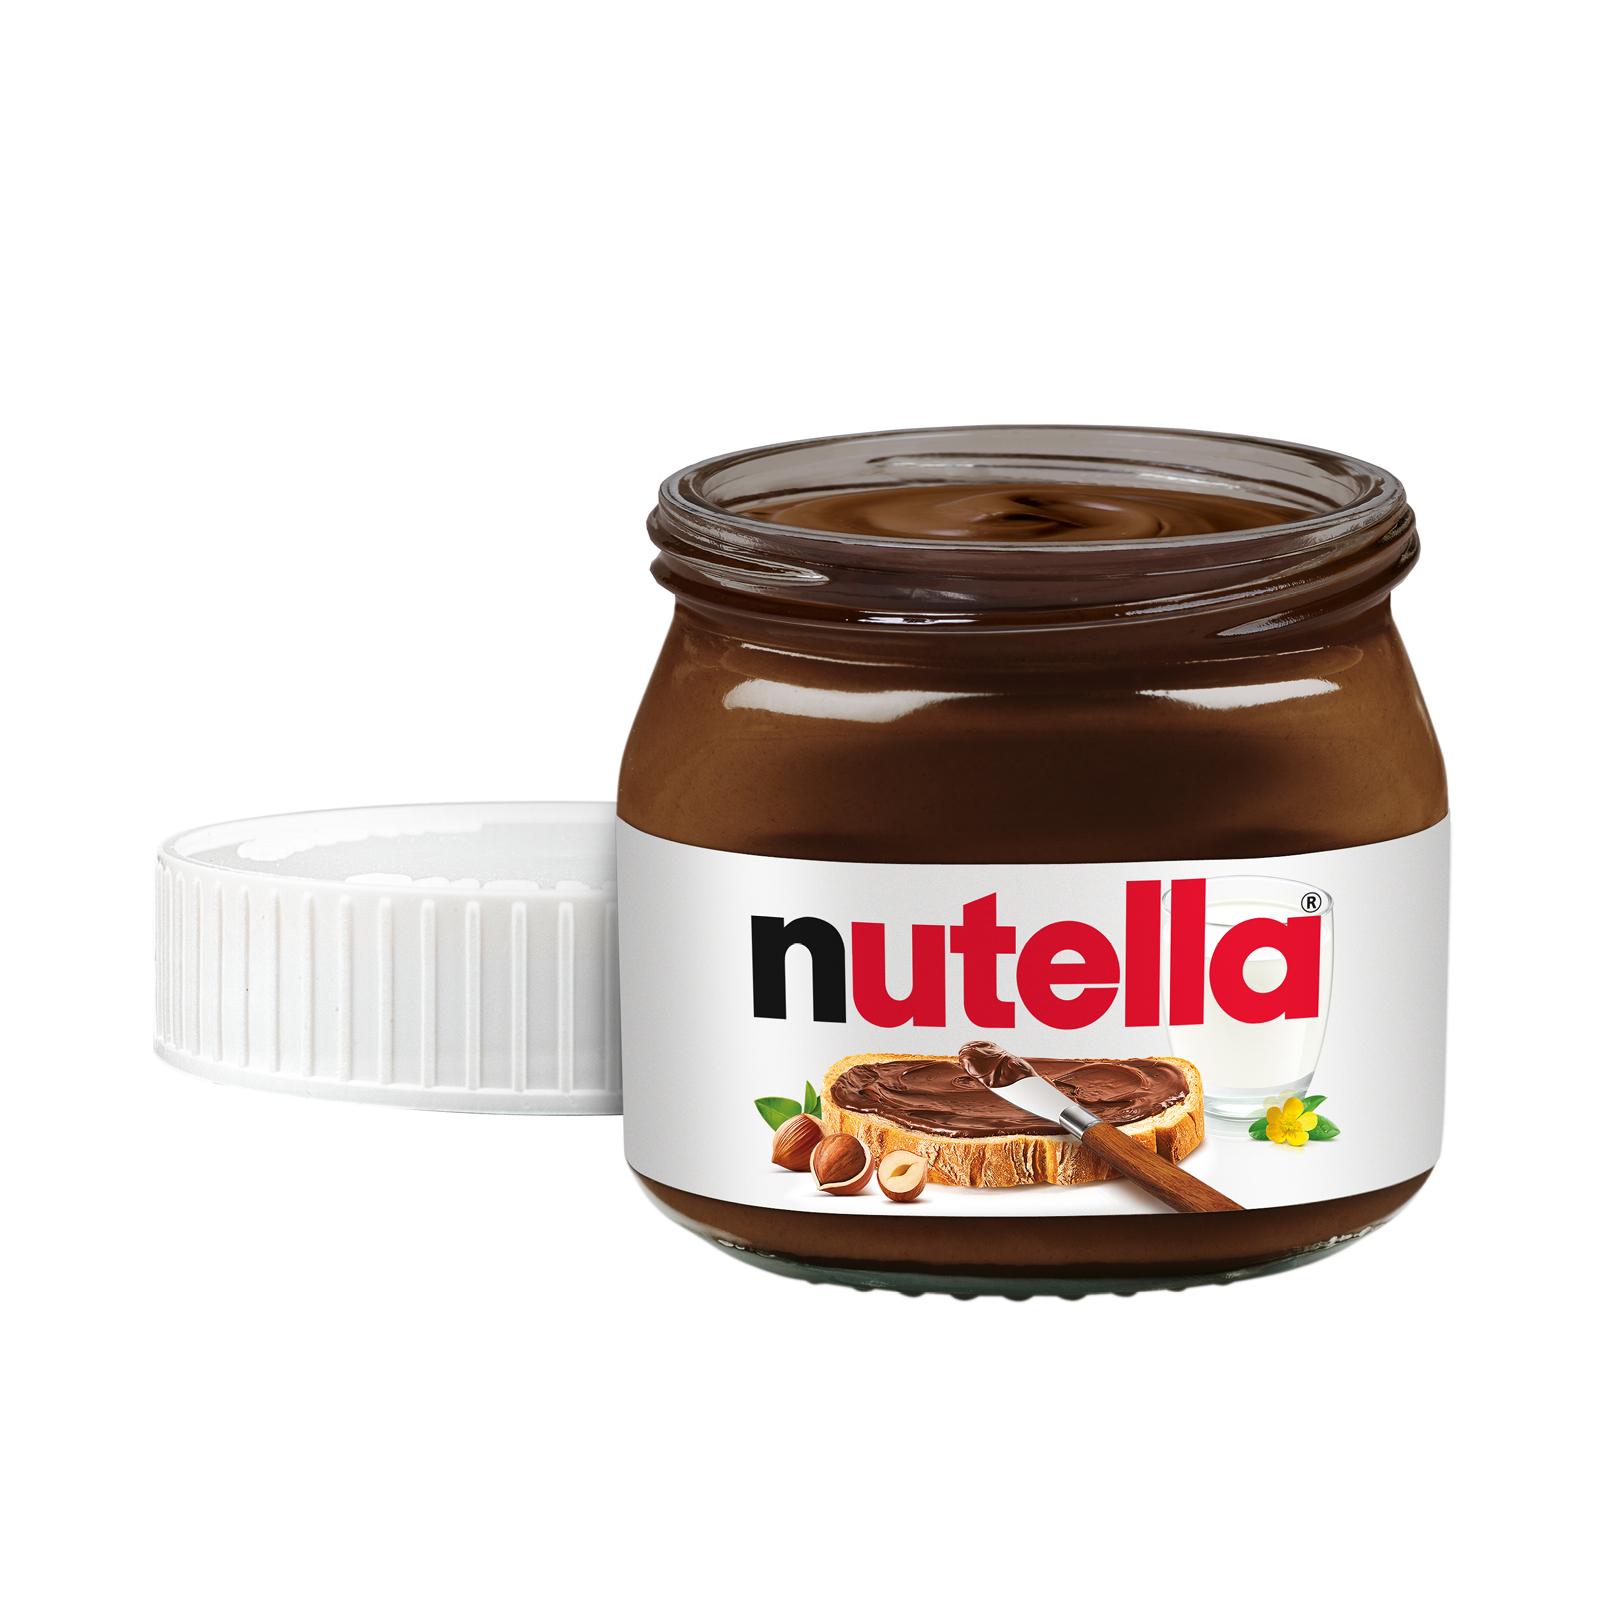 NUTELLA MINI CLASS JAR 25g #nutellaminiclassjar #minijar #nutella